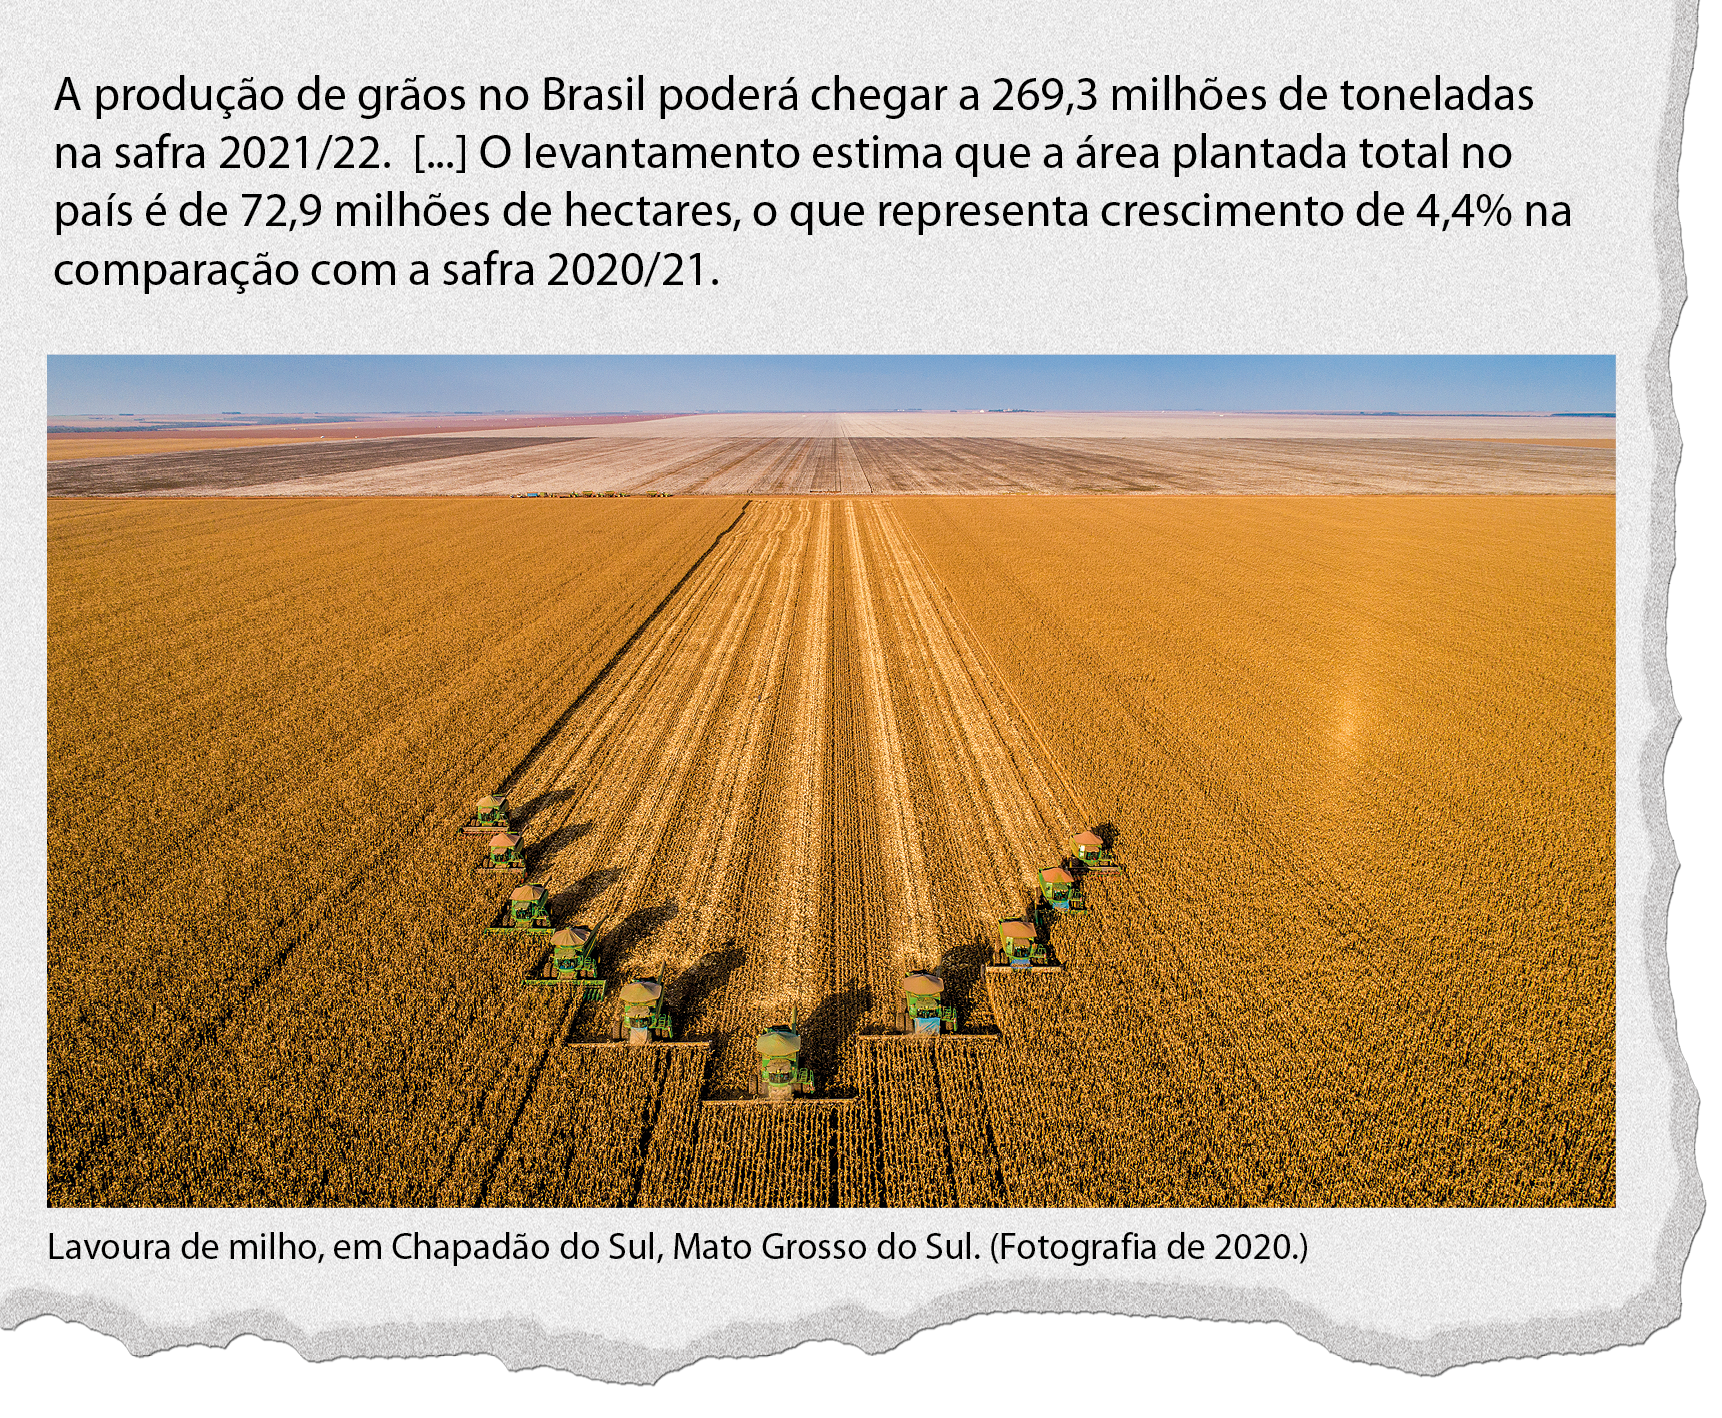 Ilustração. 
Manchete de jornal. A produção de grãos no Brasil poderá chegar a 269,3 milhões de toneladas na safra 2021/22. [...] O levantamento estima que a área plantada total no país é de 72,9 milhões de hectares, o que representa crescimento de 4,4% na comparação com a safra 2020/21.
Dados obtidos em: Produção agrícola deve atingir 269,3 milhões de toneladas, diz Conab.
Agência Brasil. Disponível em: <LINK ENCURTADO>. Acesso em: 9 ago. 2022.

Fotografia. 
Vista do alto de plantação de milho. No centro, faixas verticais feitas por máquinas.